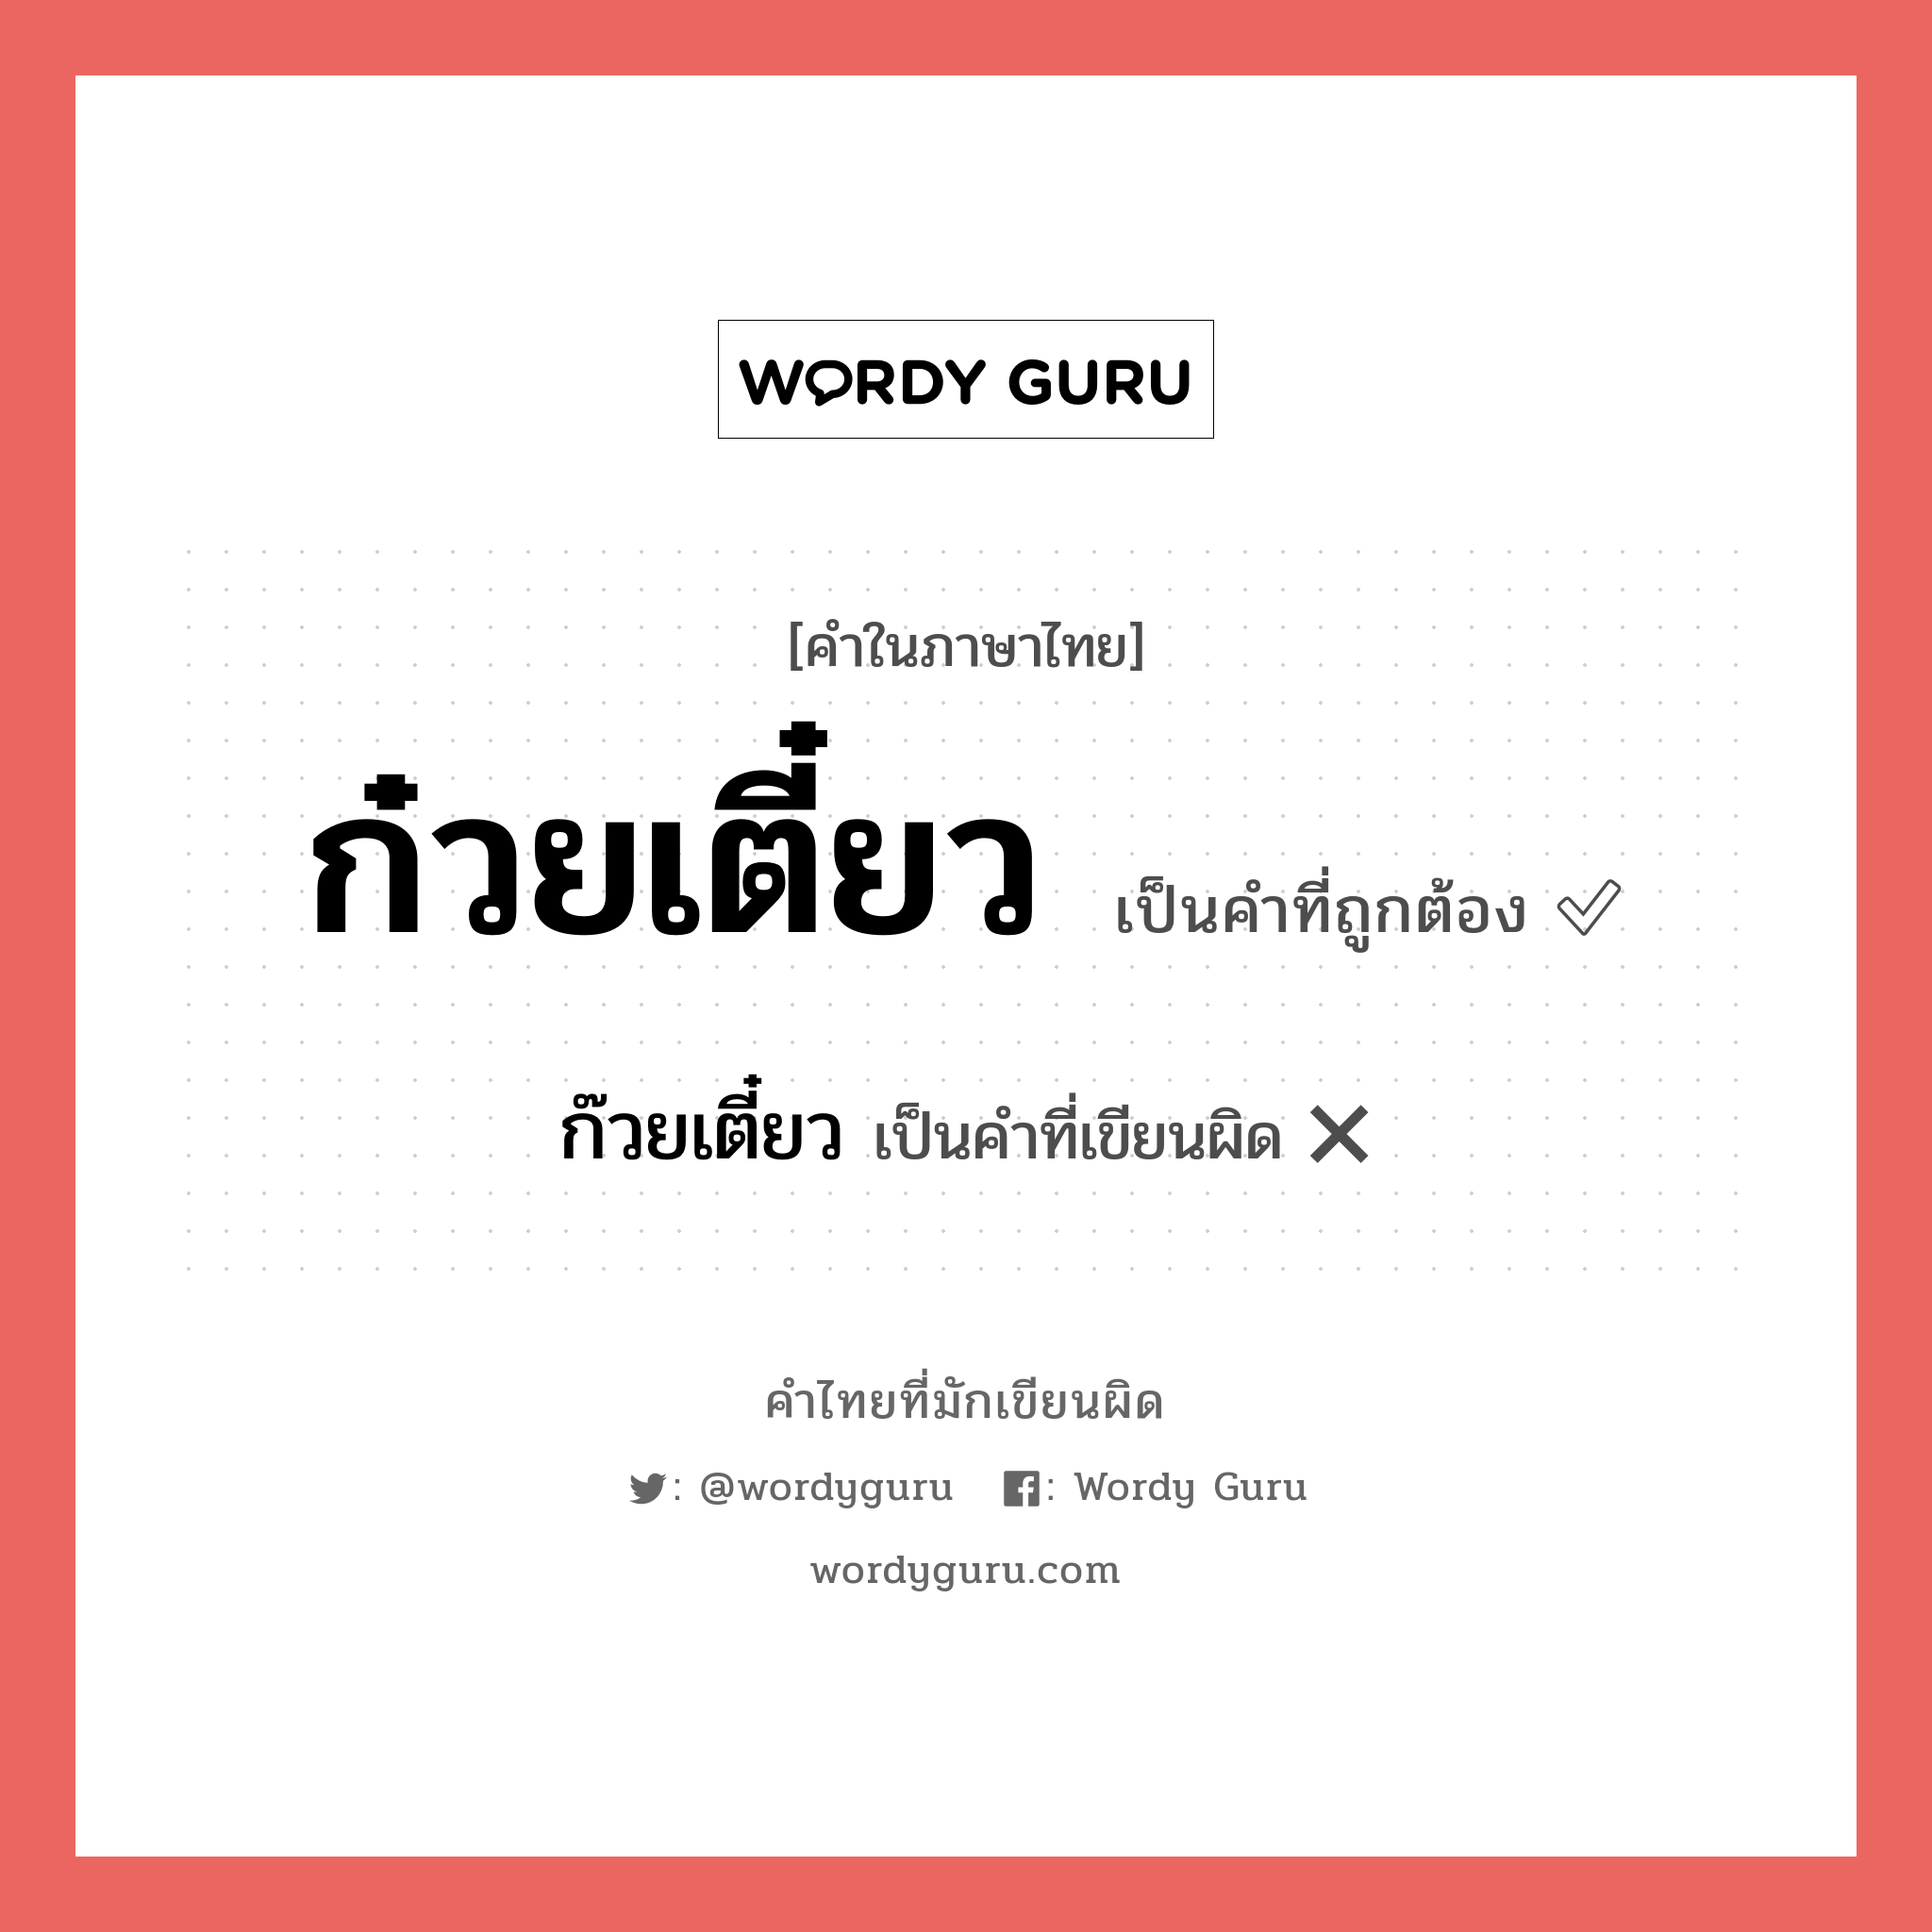 ก๋วยเตี๋ยว หรือ ก๊วยเตี๋ยว คำไหนเขียนถูก?, คำในภาษาไทยที่มักเขียนผิด ก๋วยเตี๋ยว คำที่ผิด ❌ ก๊วยเตี๋ยว